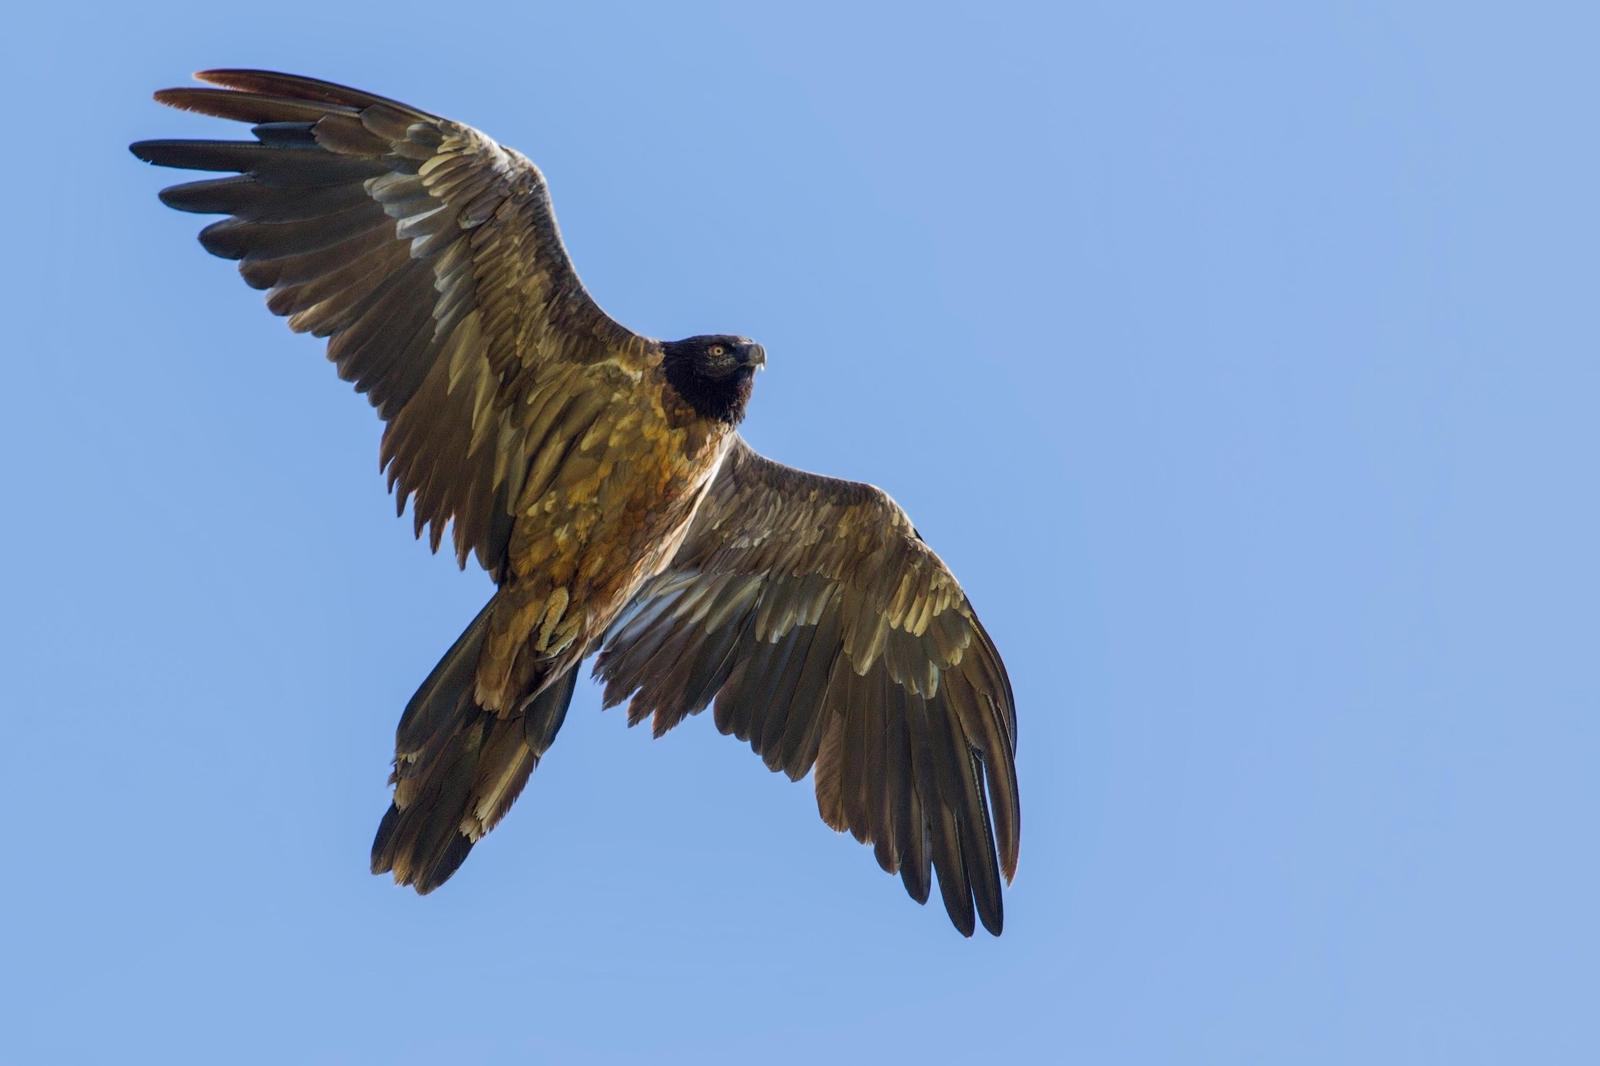 Bearded Vulture (Eurasian) Photo by Jeff Schwilk